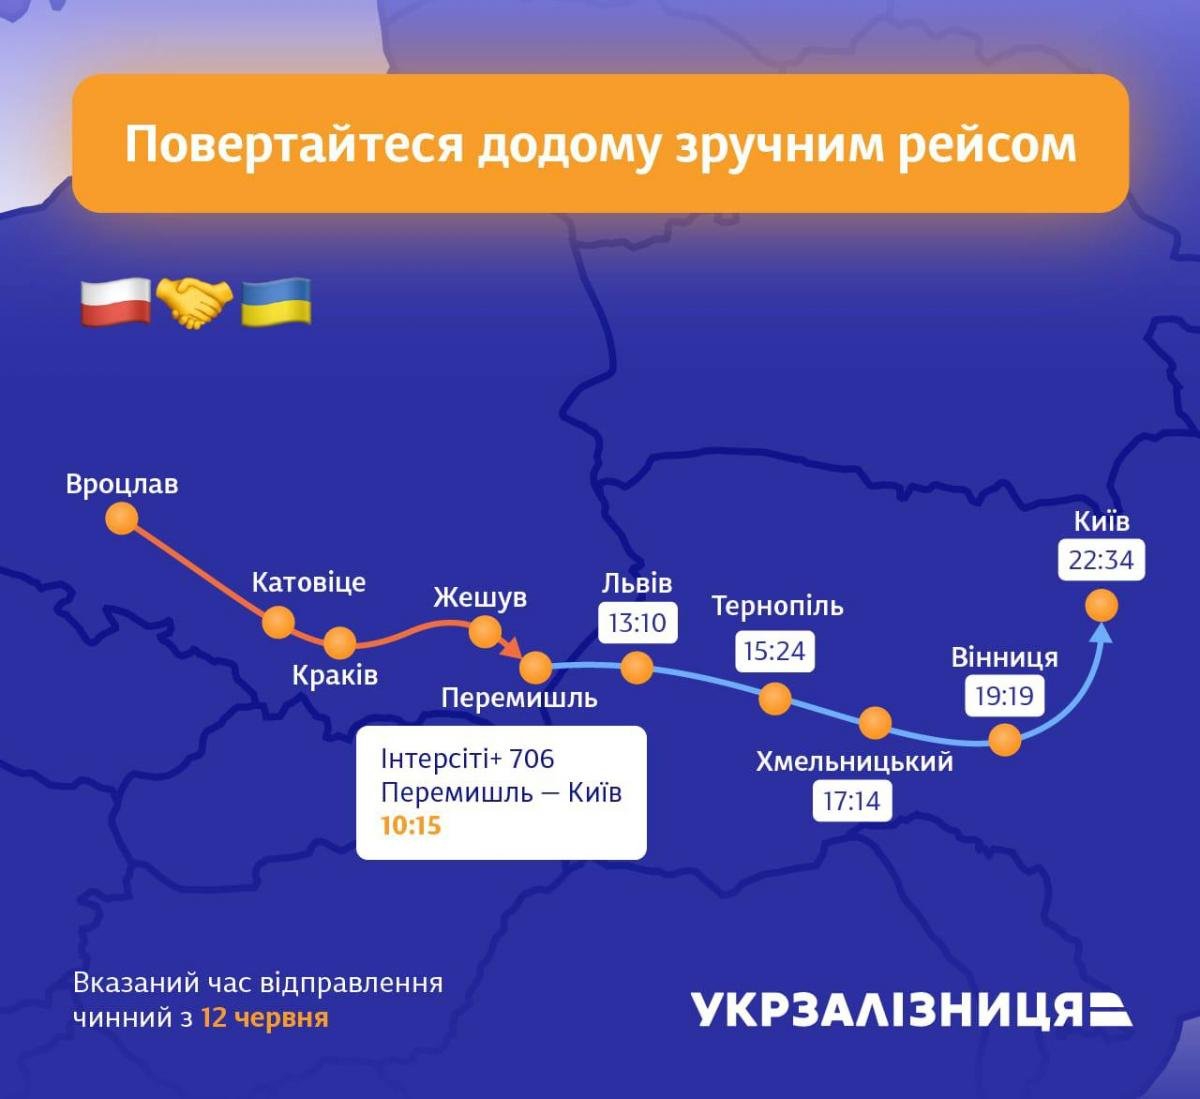 Расписание движения поезда Интерсити+ 706 "Перемышль – Киев" / фото t.me/UkrzalInfo